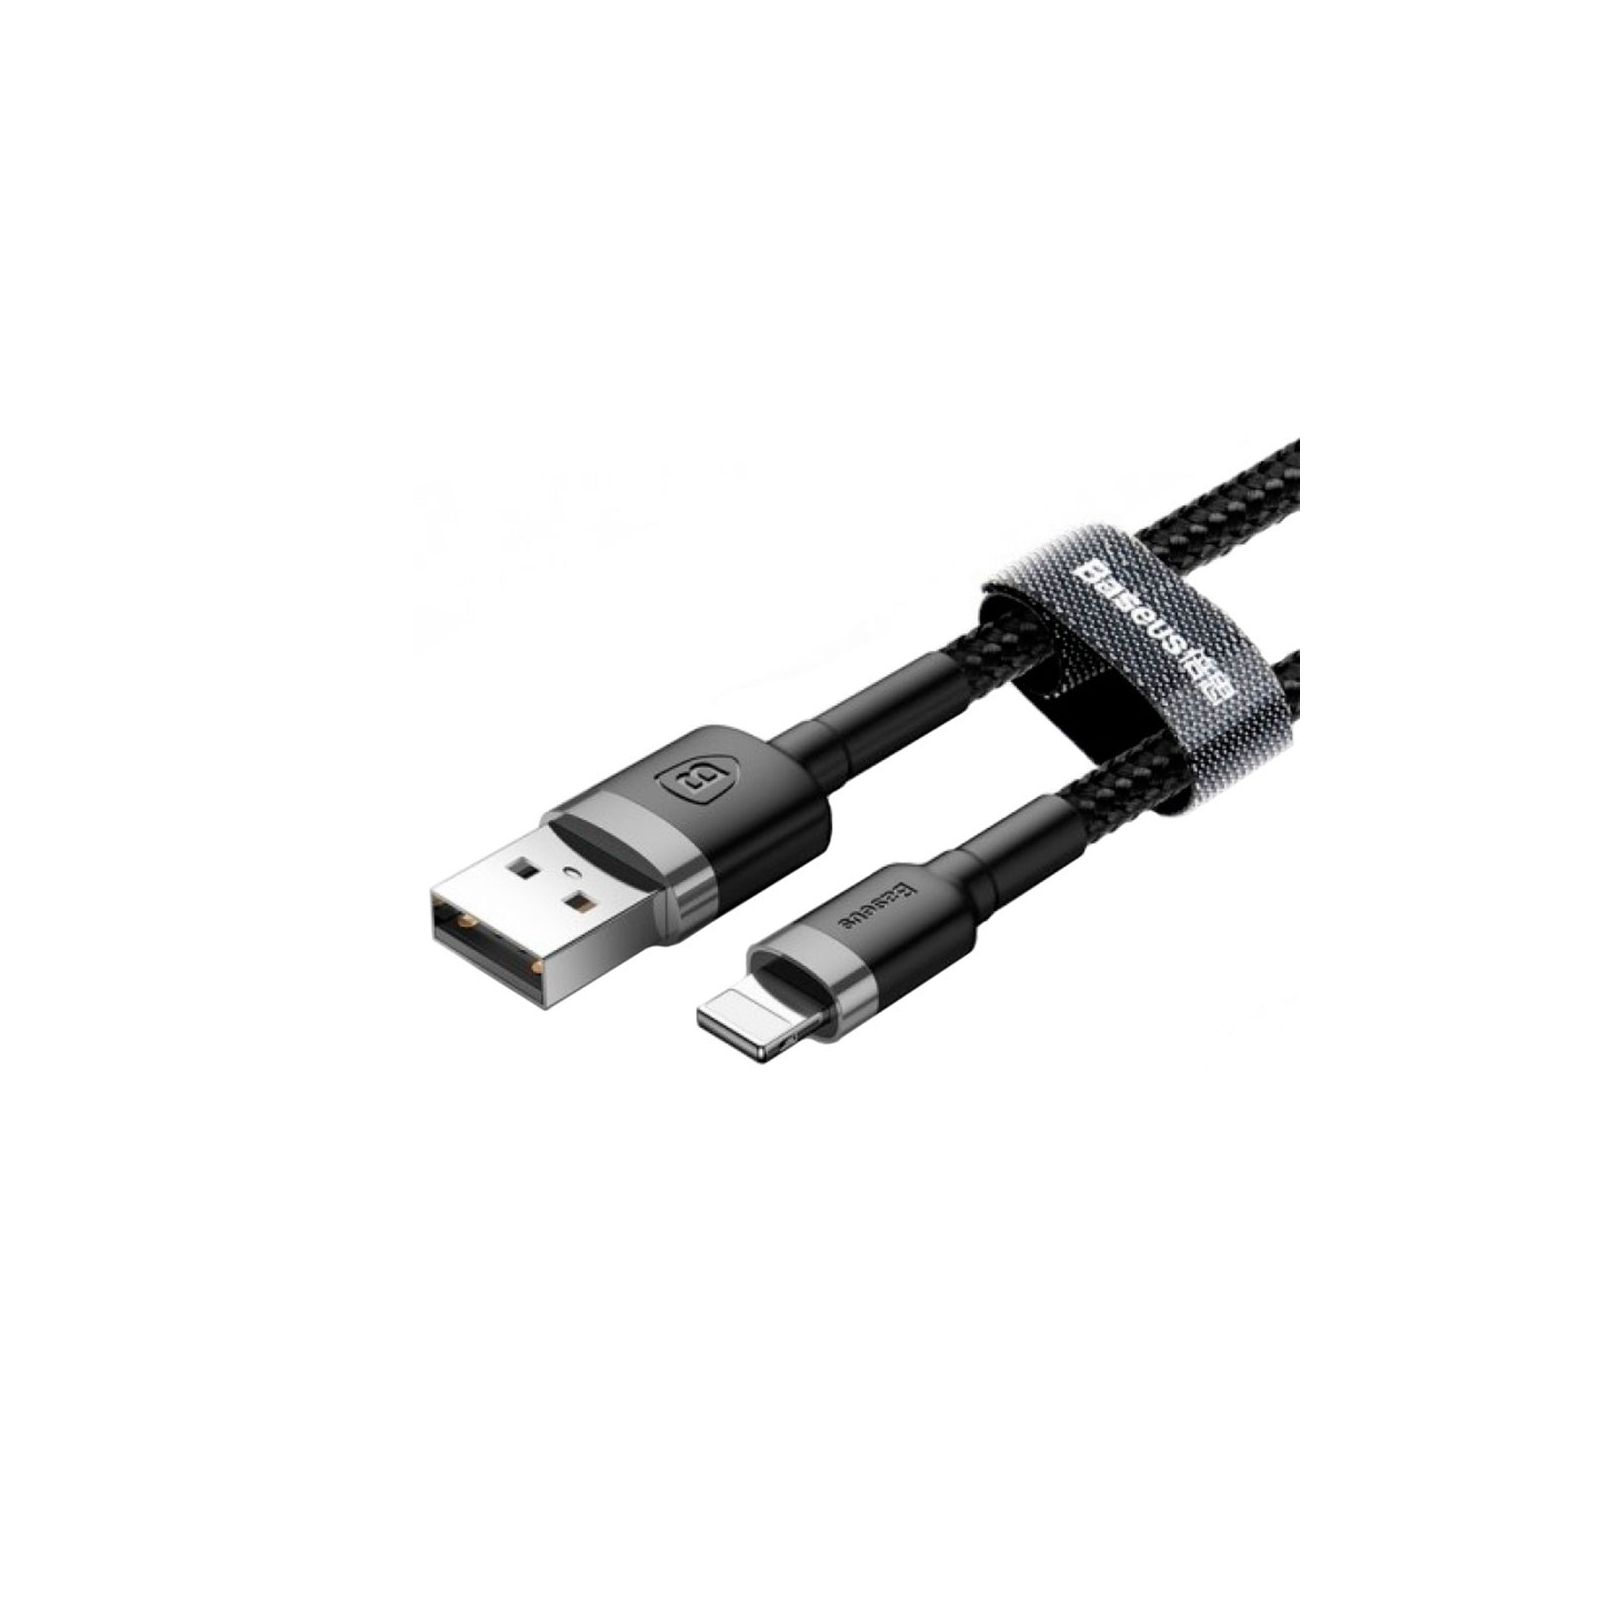 Дата кабель USB 2.0 AM to Lightning 2.0m Cafule 1.5A gray+black Baseus (CALKLF-CG1) зображення 4